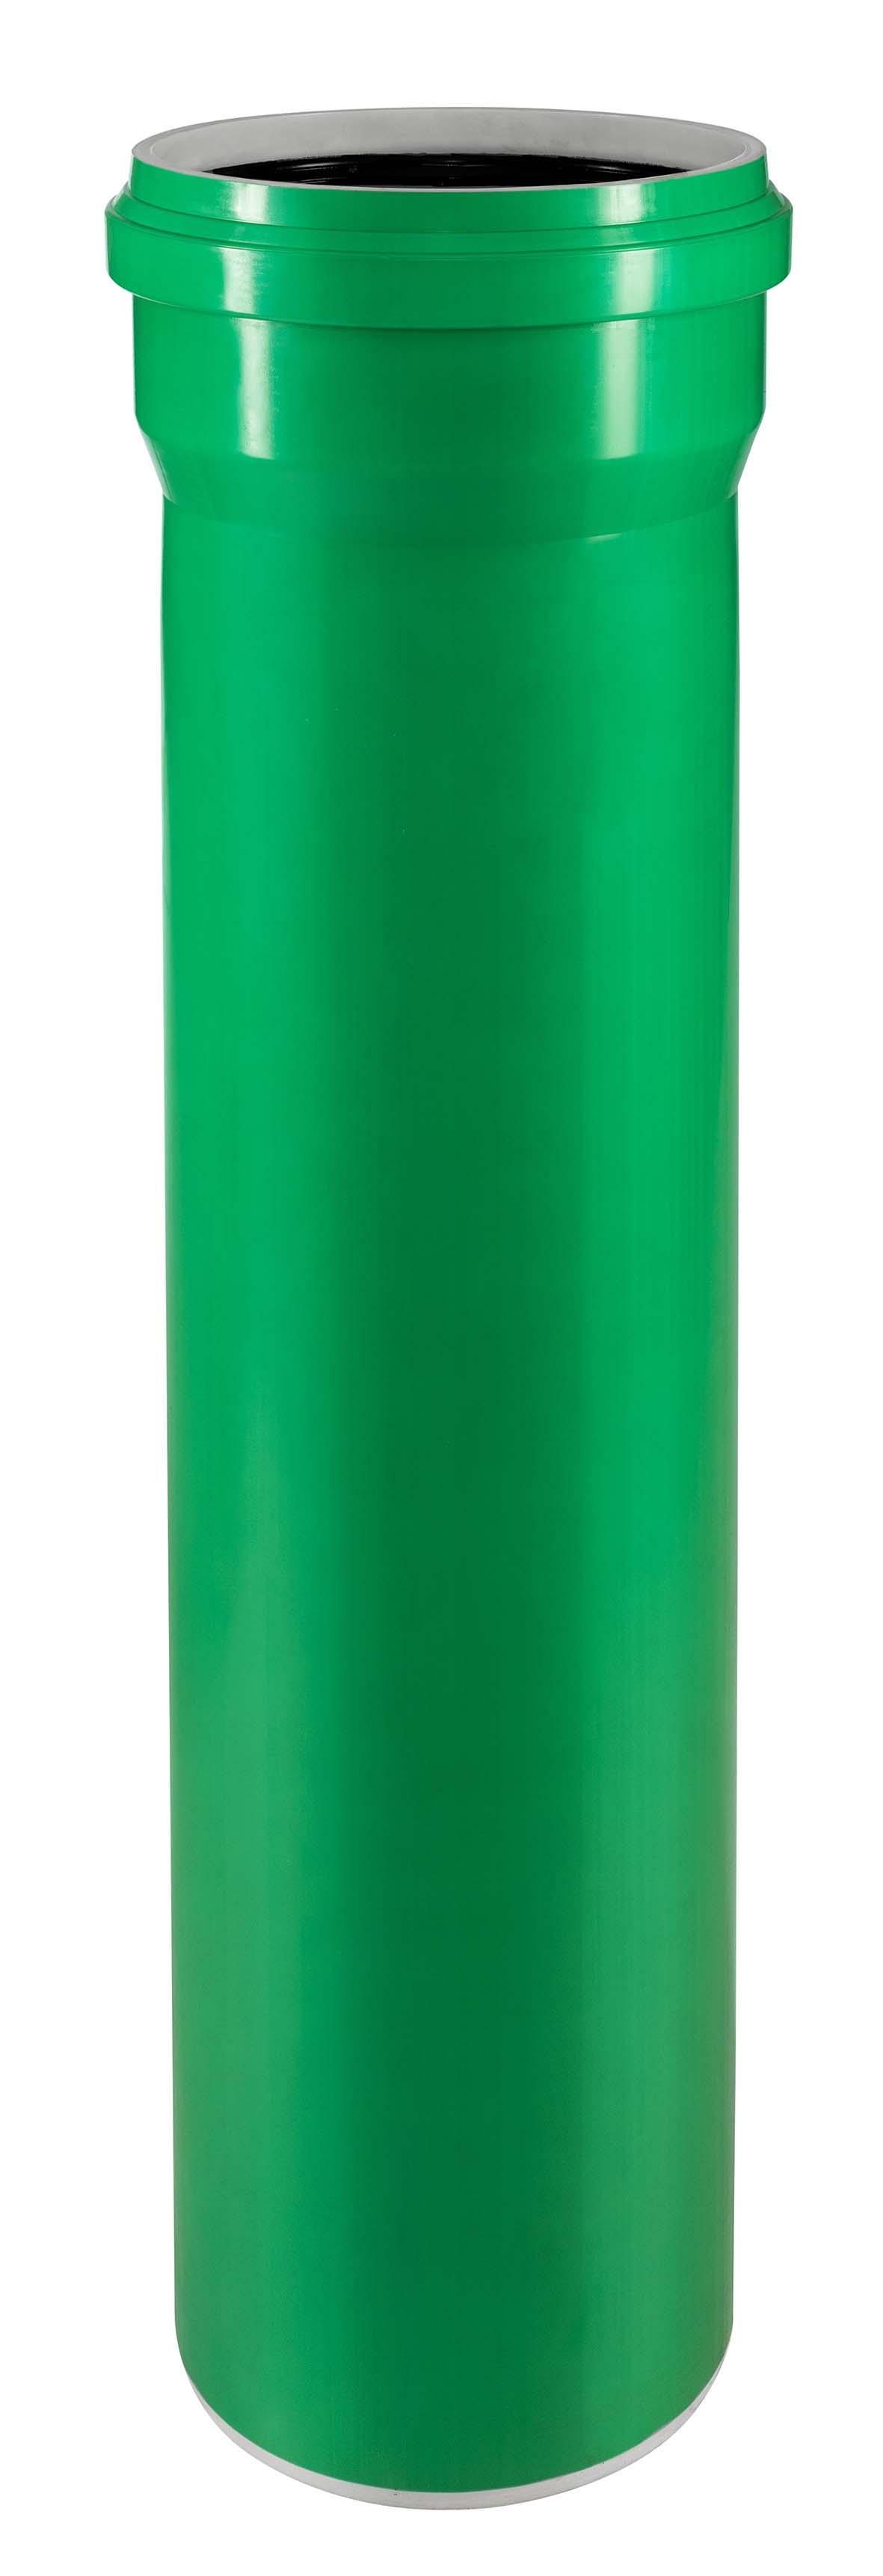 KG-2000 PP SN 10 Rohr (grün) DN 125 Länge 1 m